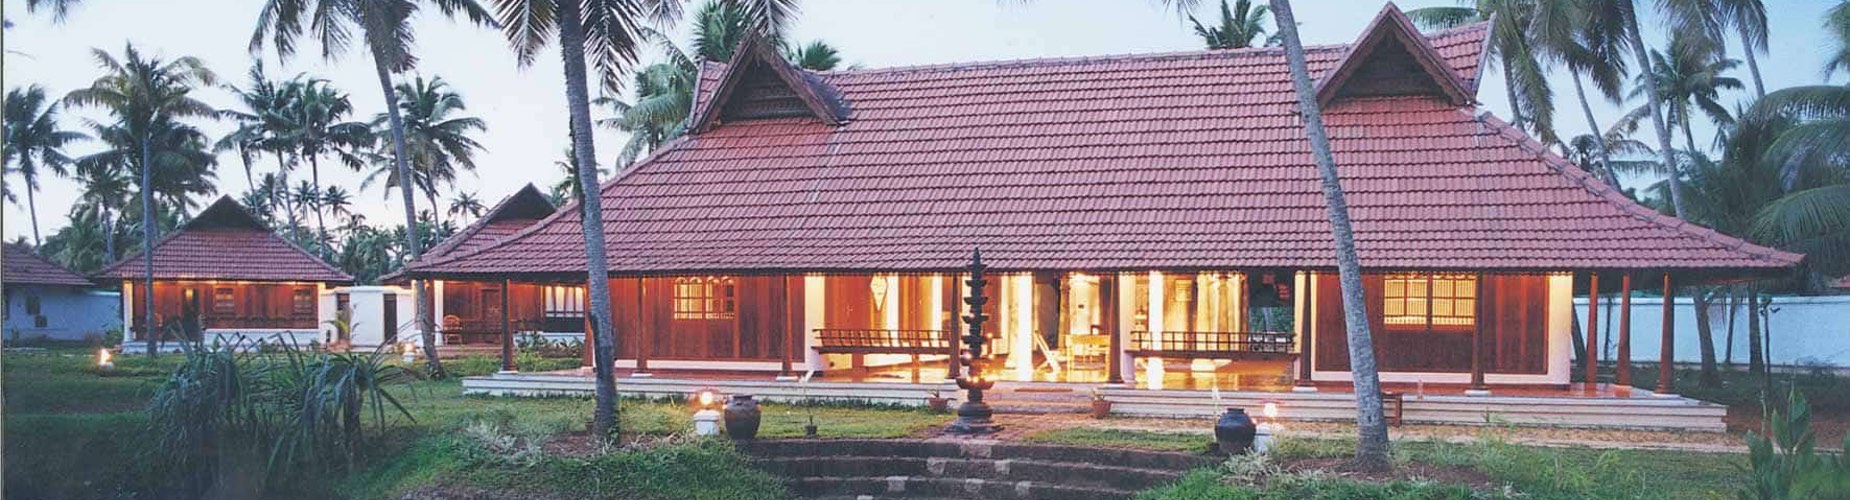 Ayruvedic Resorts in Kerala : Ayurveda Packages From Kumarakom Lake Resort